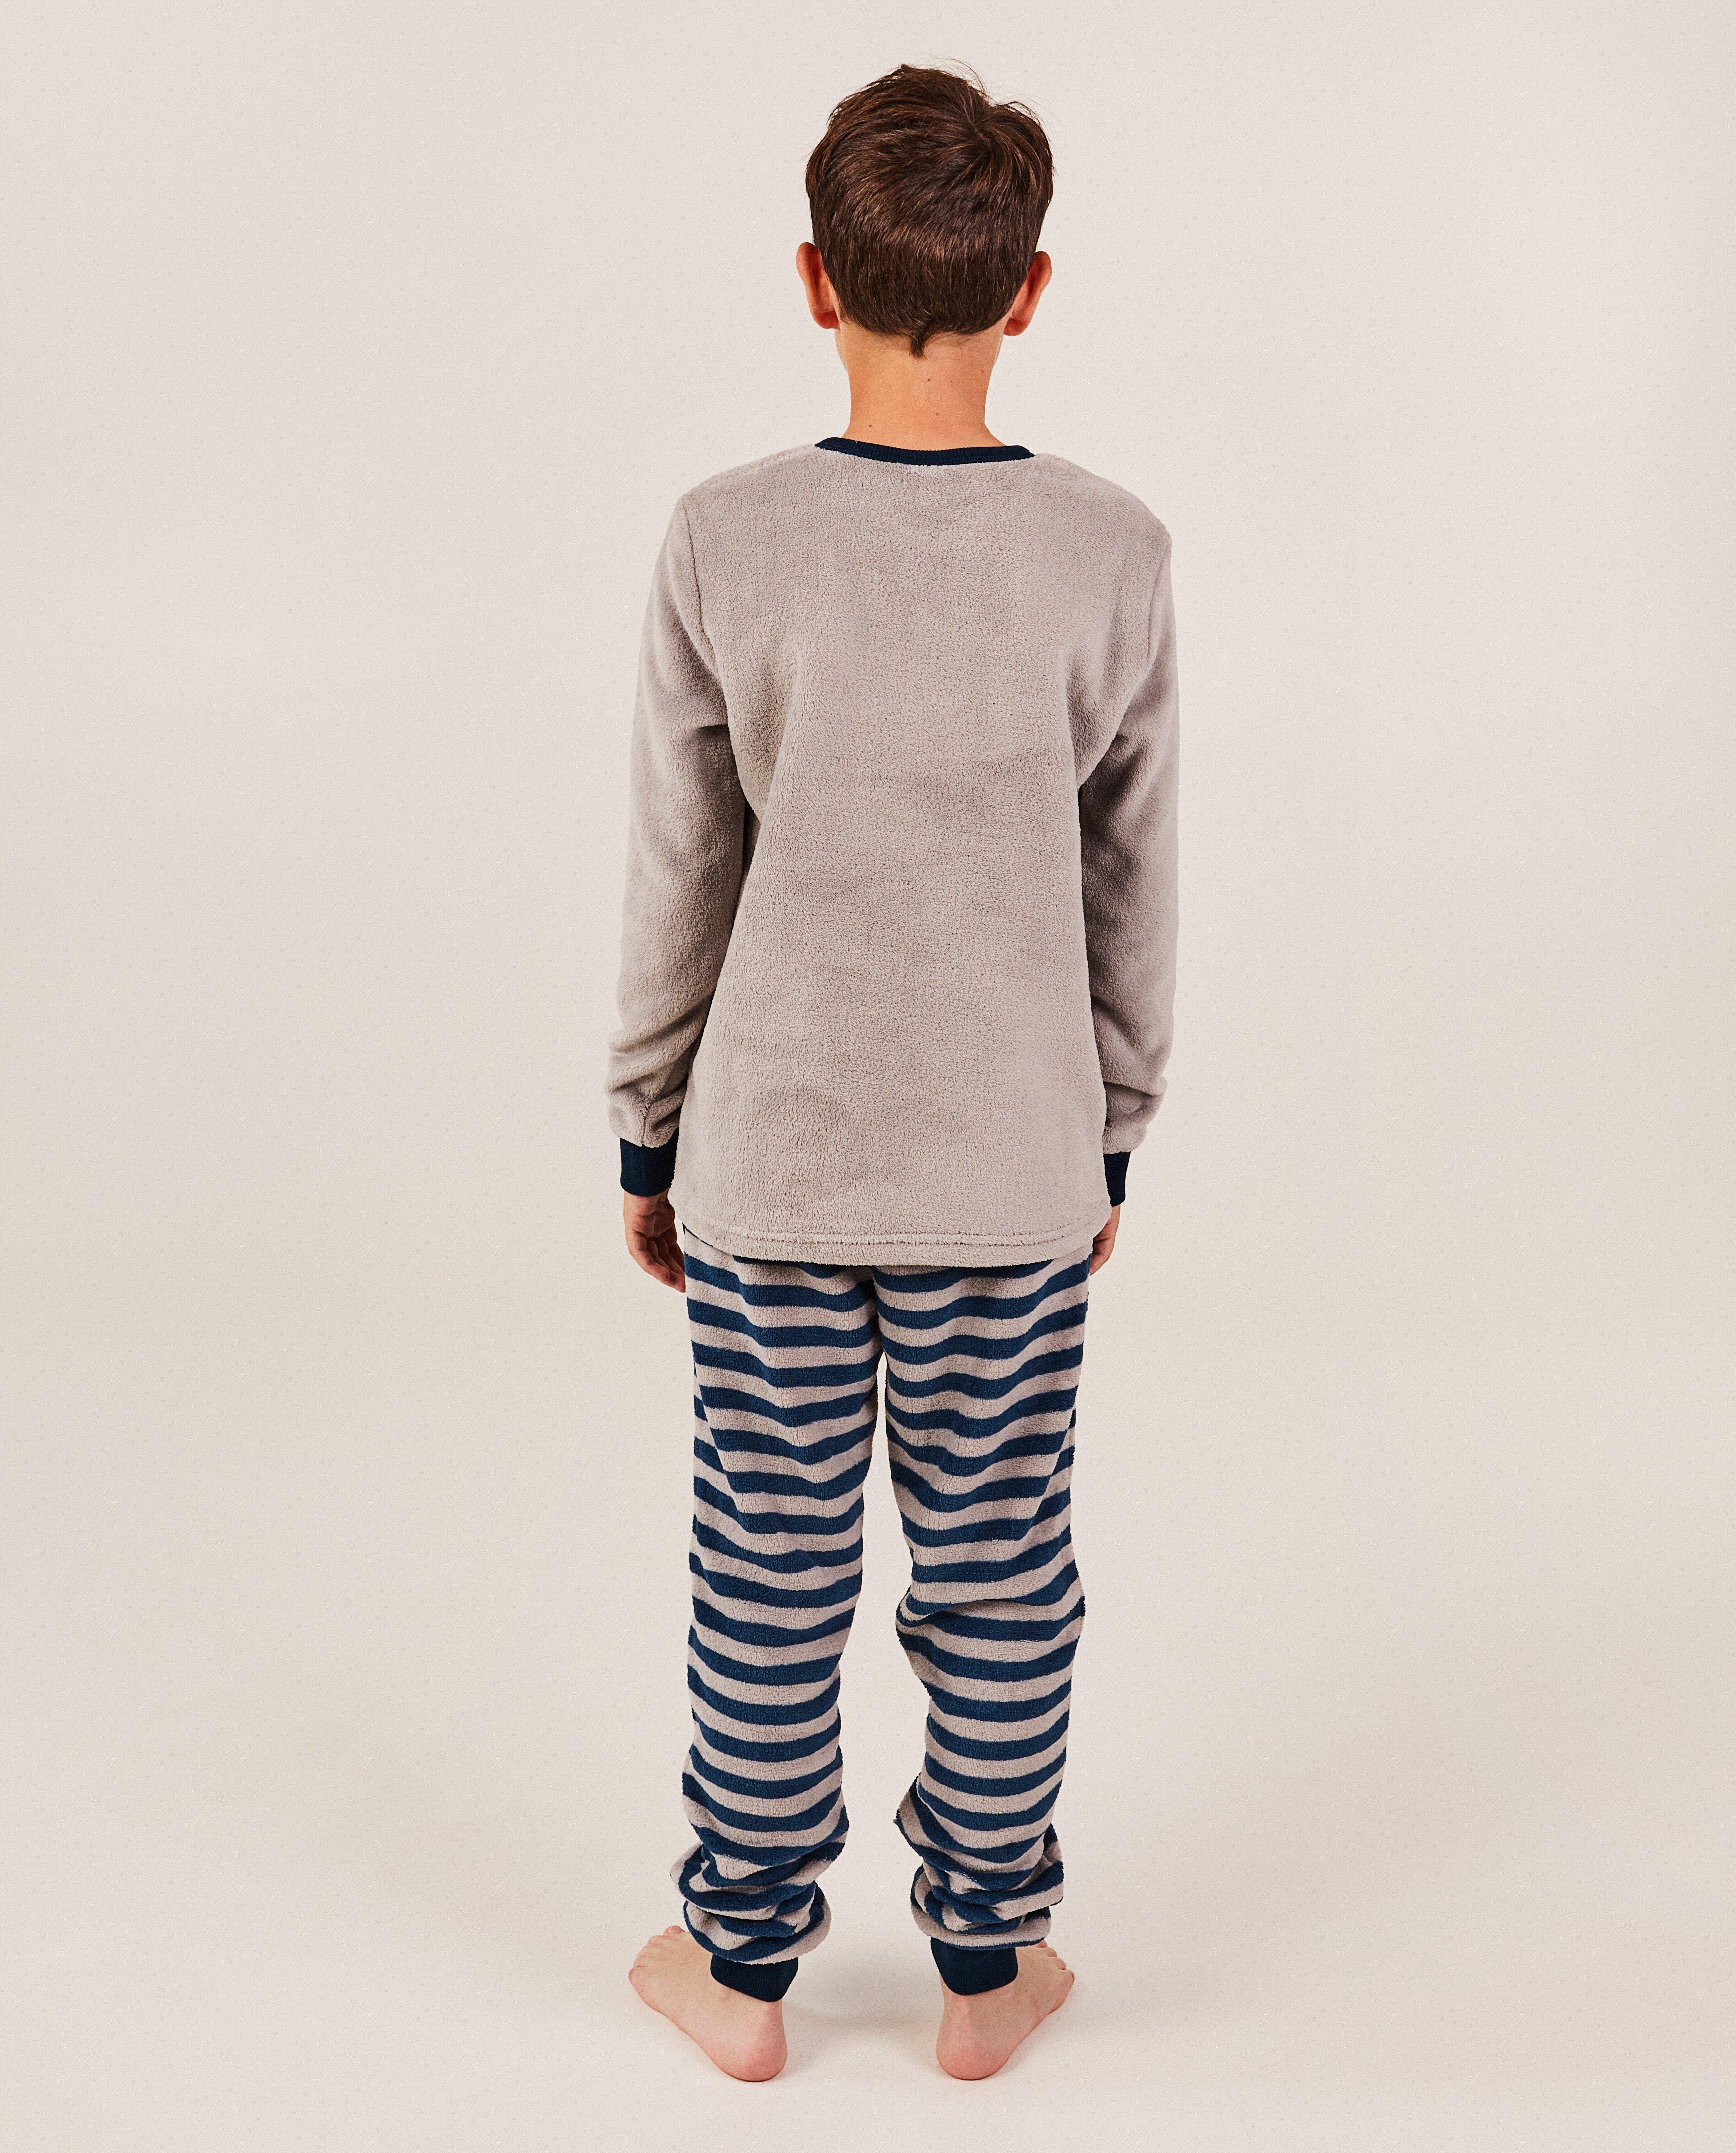 Nachtkleding - Fleece pyjama met print